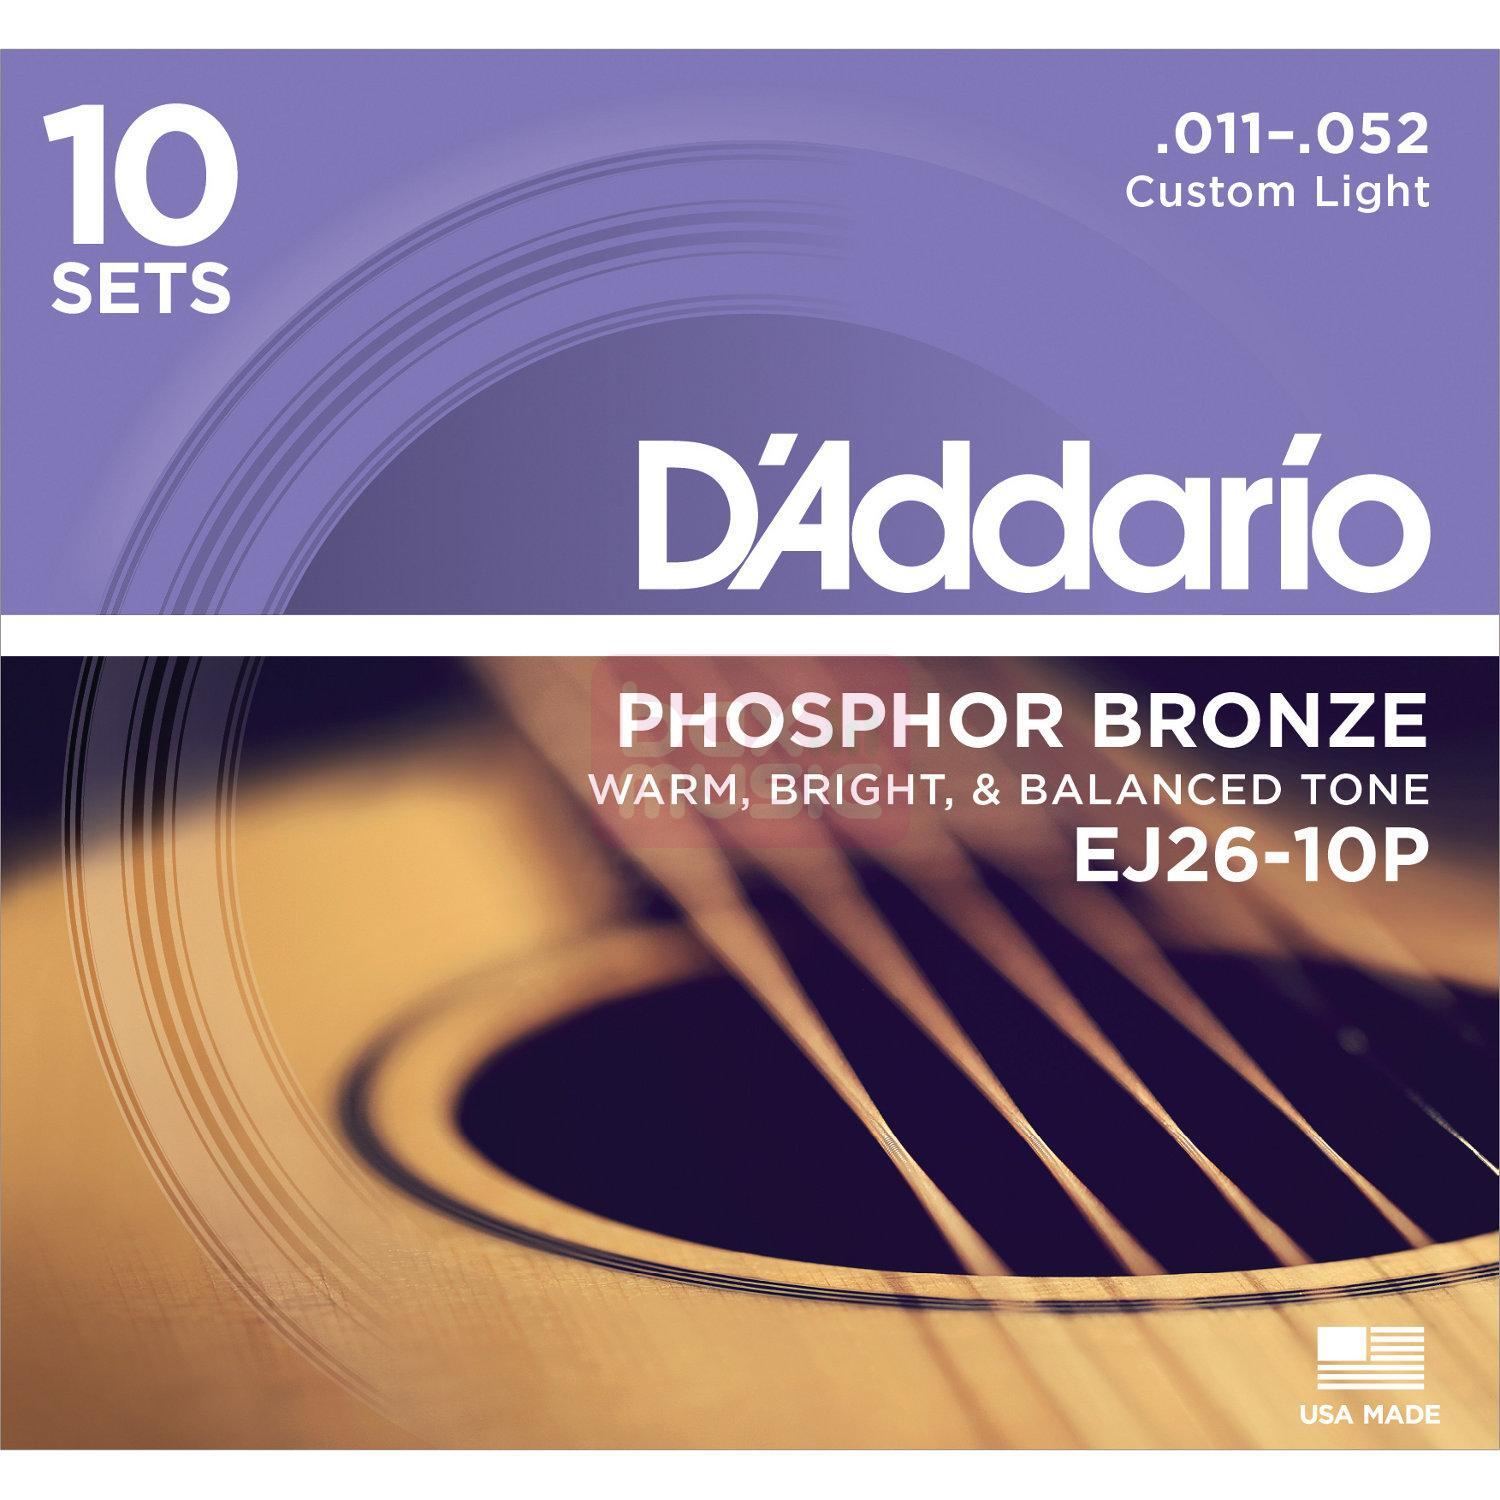 D'ADDARIO EJ26-10P snarenset voor akoestische gitaar 10 sets